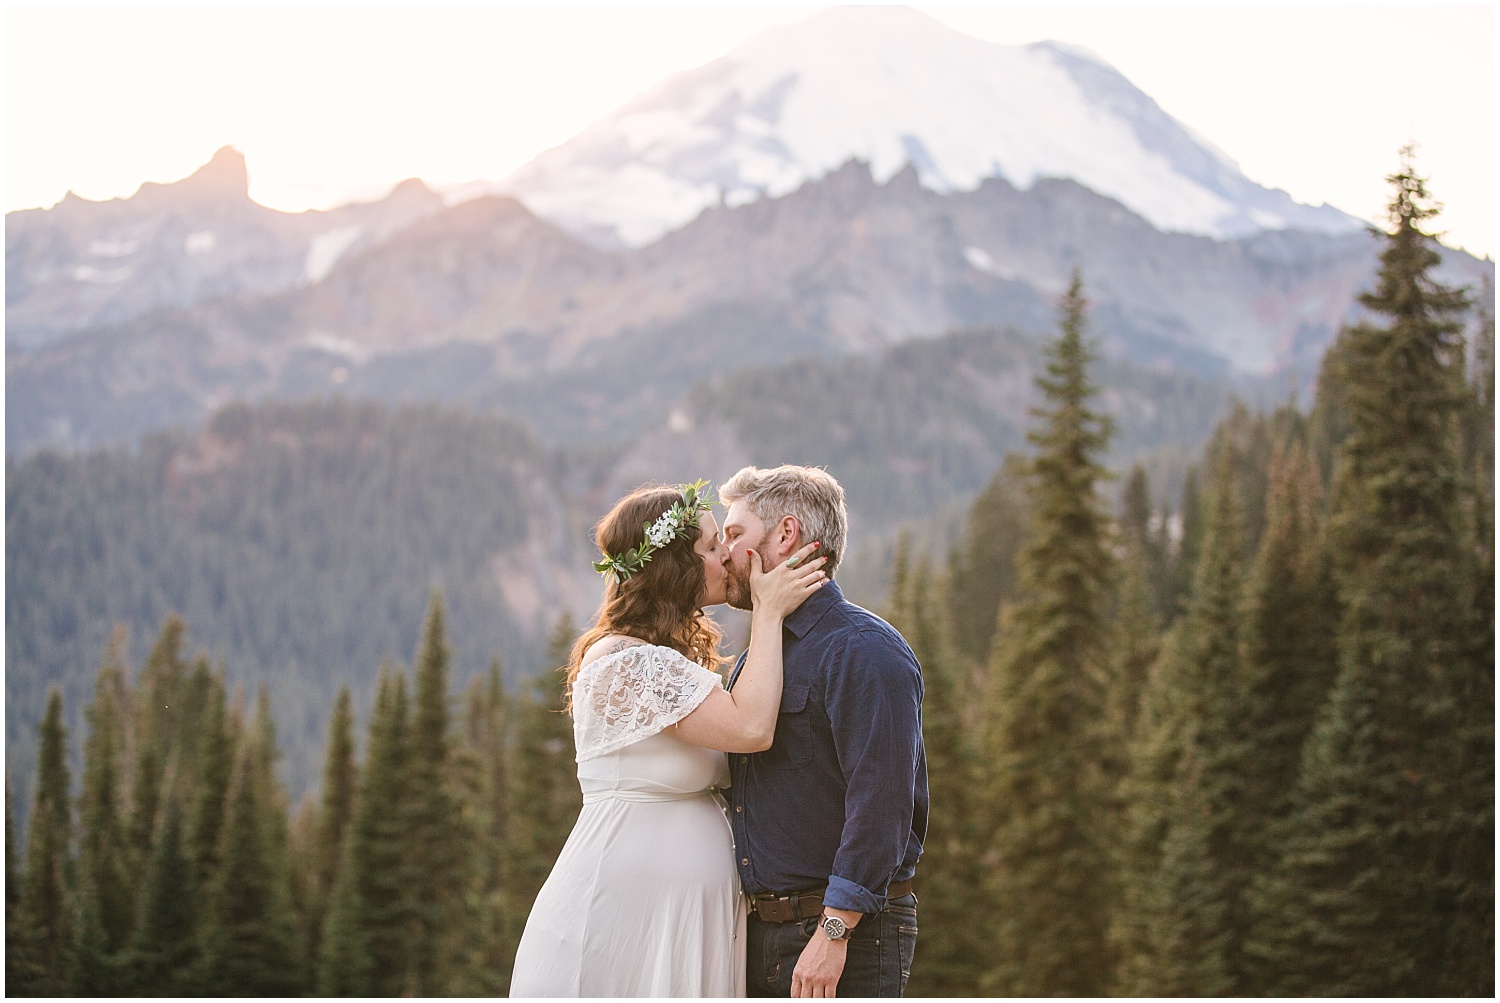 Surprise proposal at Mount Rainier National Park